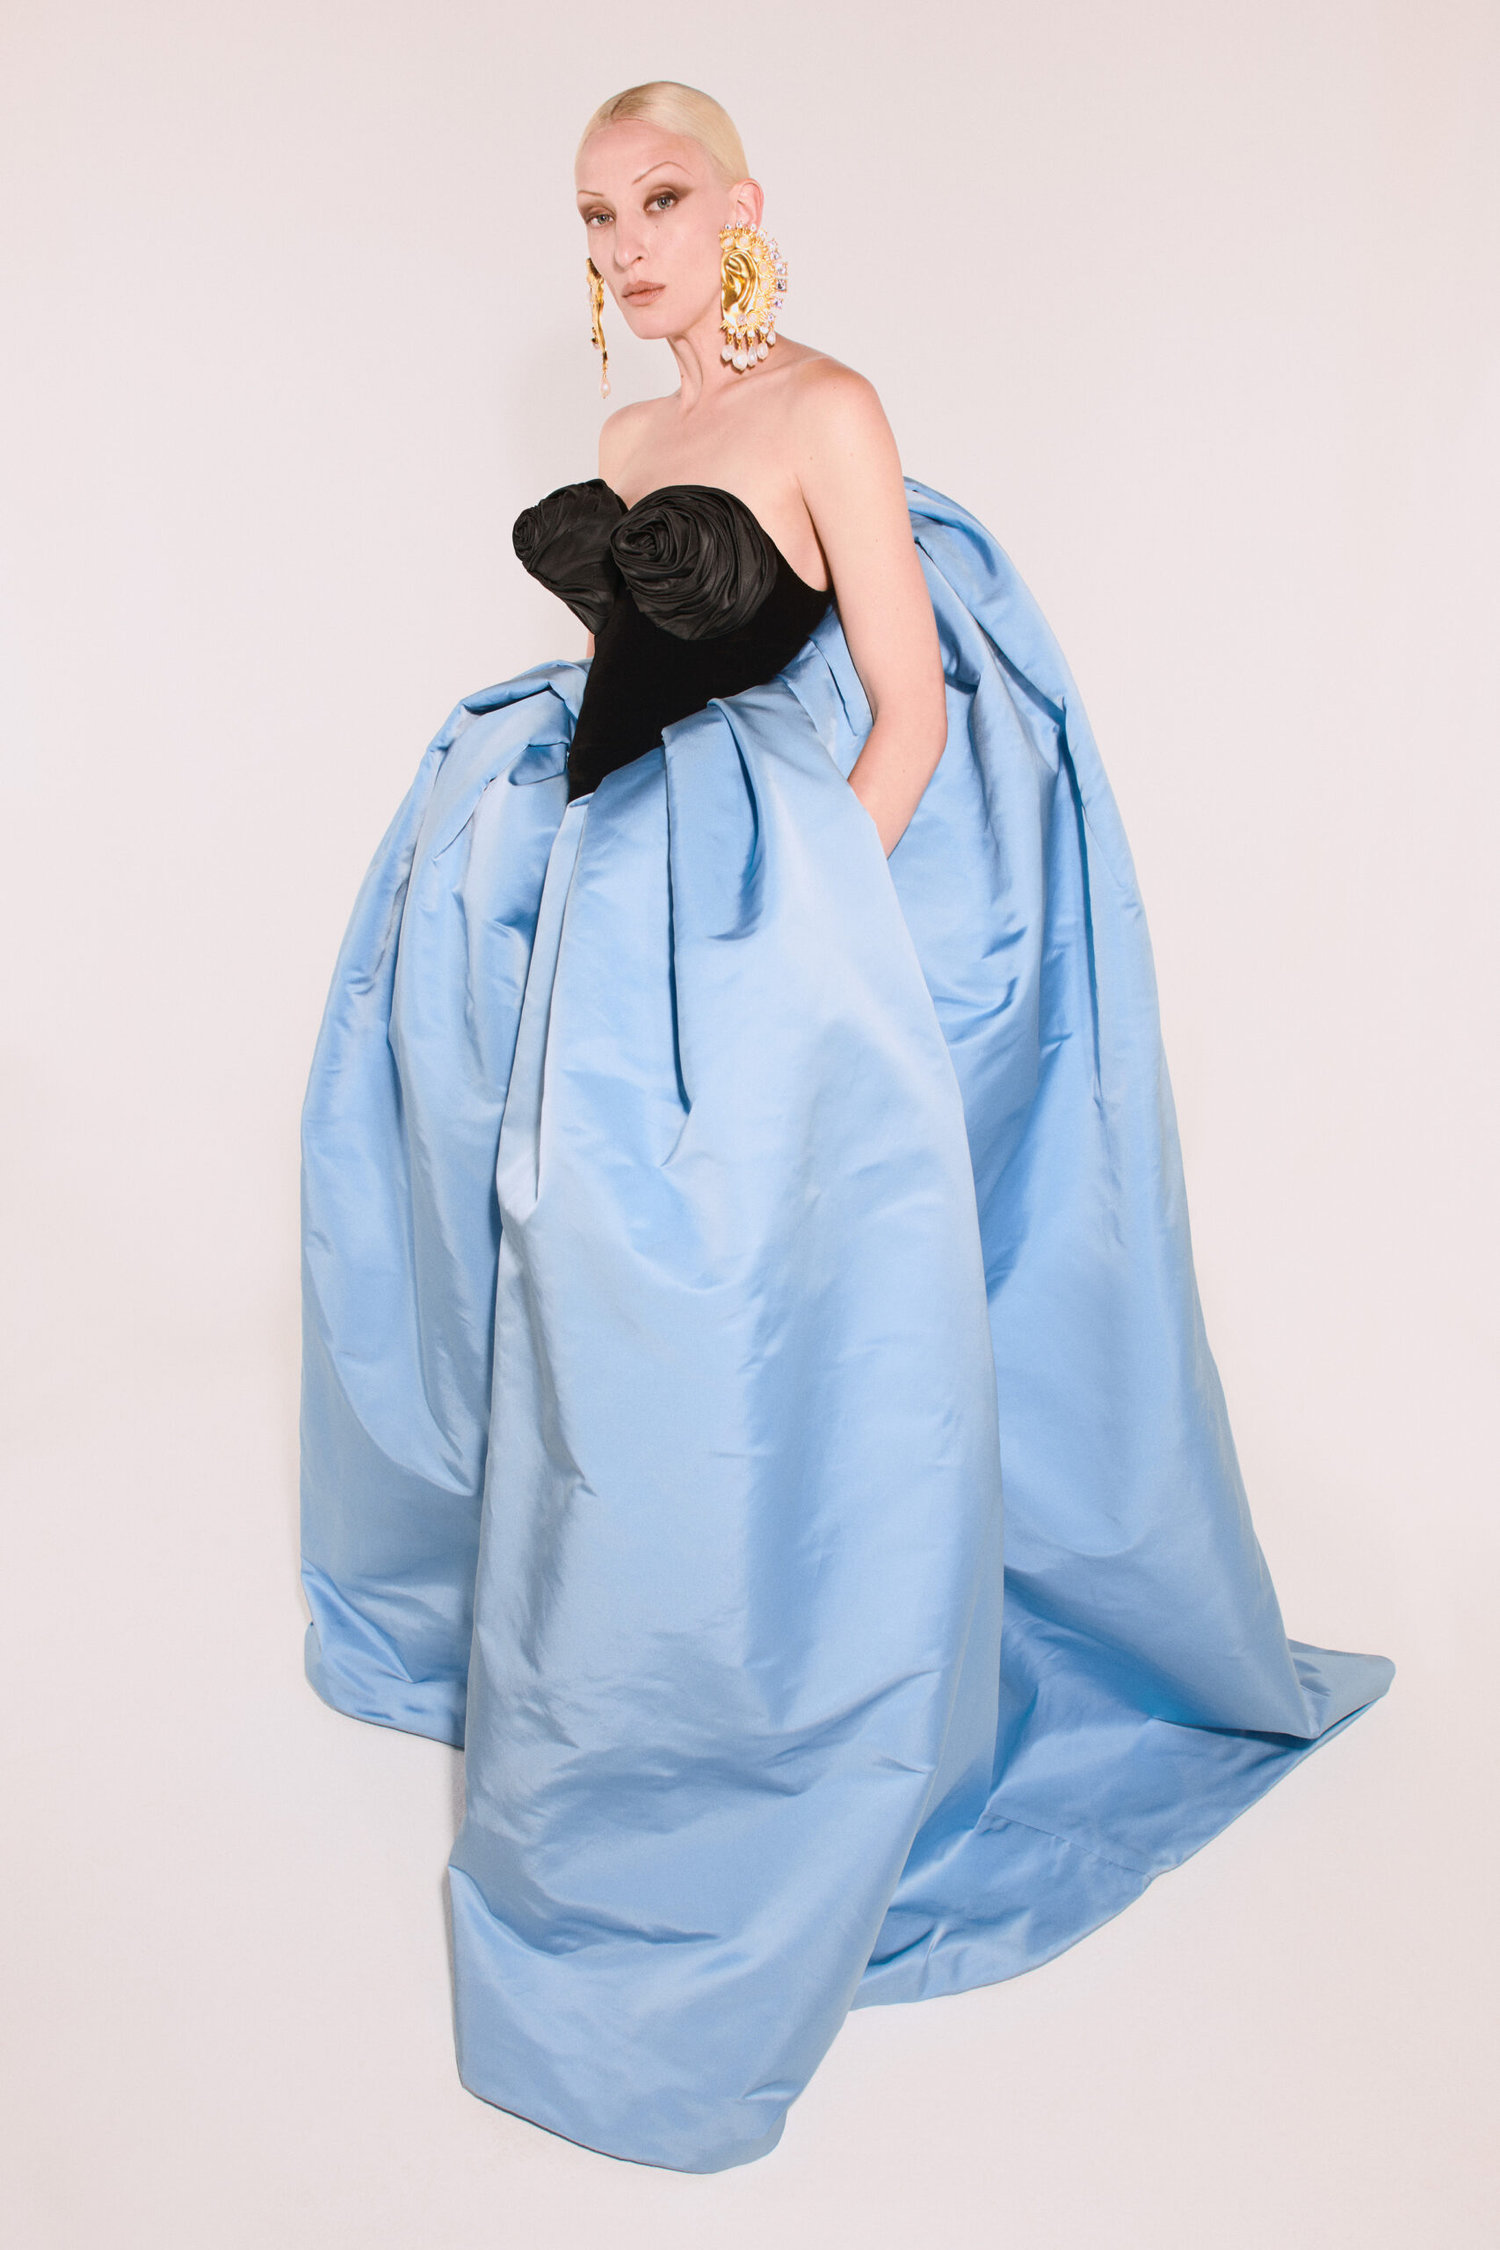 Hier stand nicht Jean Paul Gaultier Pate, sondern natürlich Elsa Schiaparelli. Roseberry überspitzt die konische Form des BHs ihres patentierten Badeanzugs für das schwarze Bustier aus Seidenvelours. Der überbordende Rock aus blauem Taft ähnelt dem von Lady Gaga bei der Amtseinführung von Joe Biden.